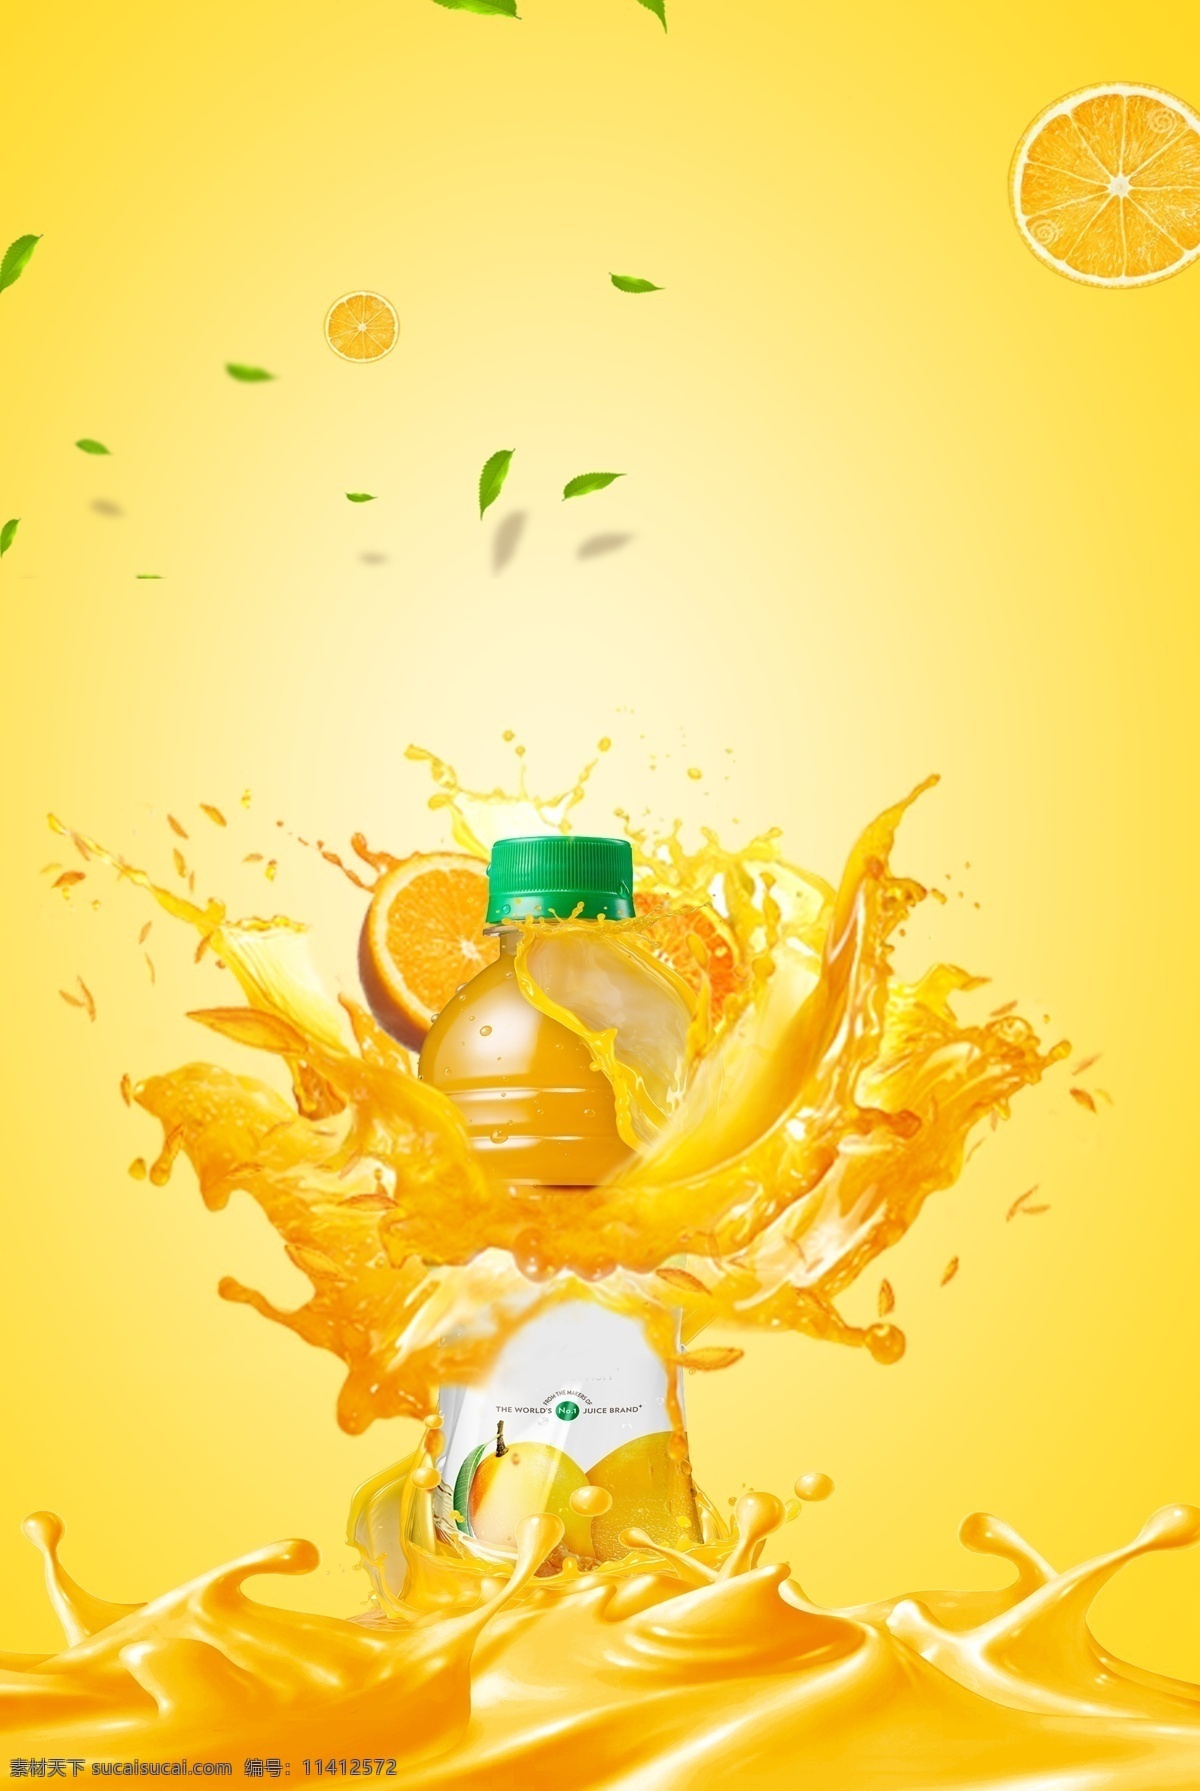 橙汁 创意 合成 漂浮 水果 广告 背景 橘子片 橙子